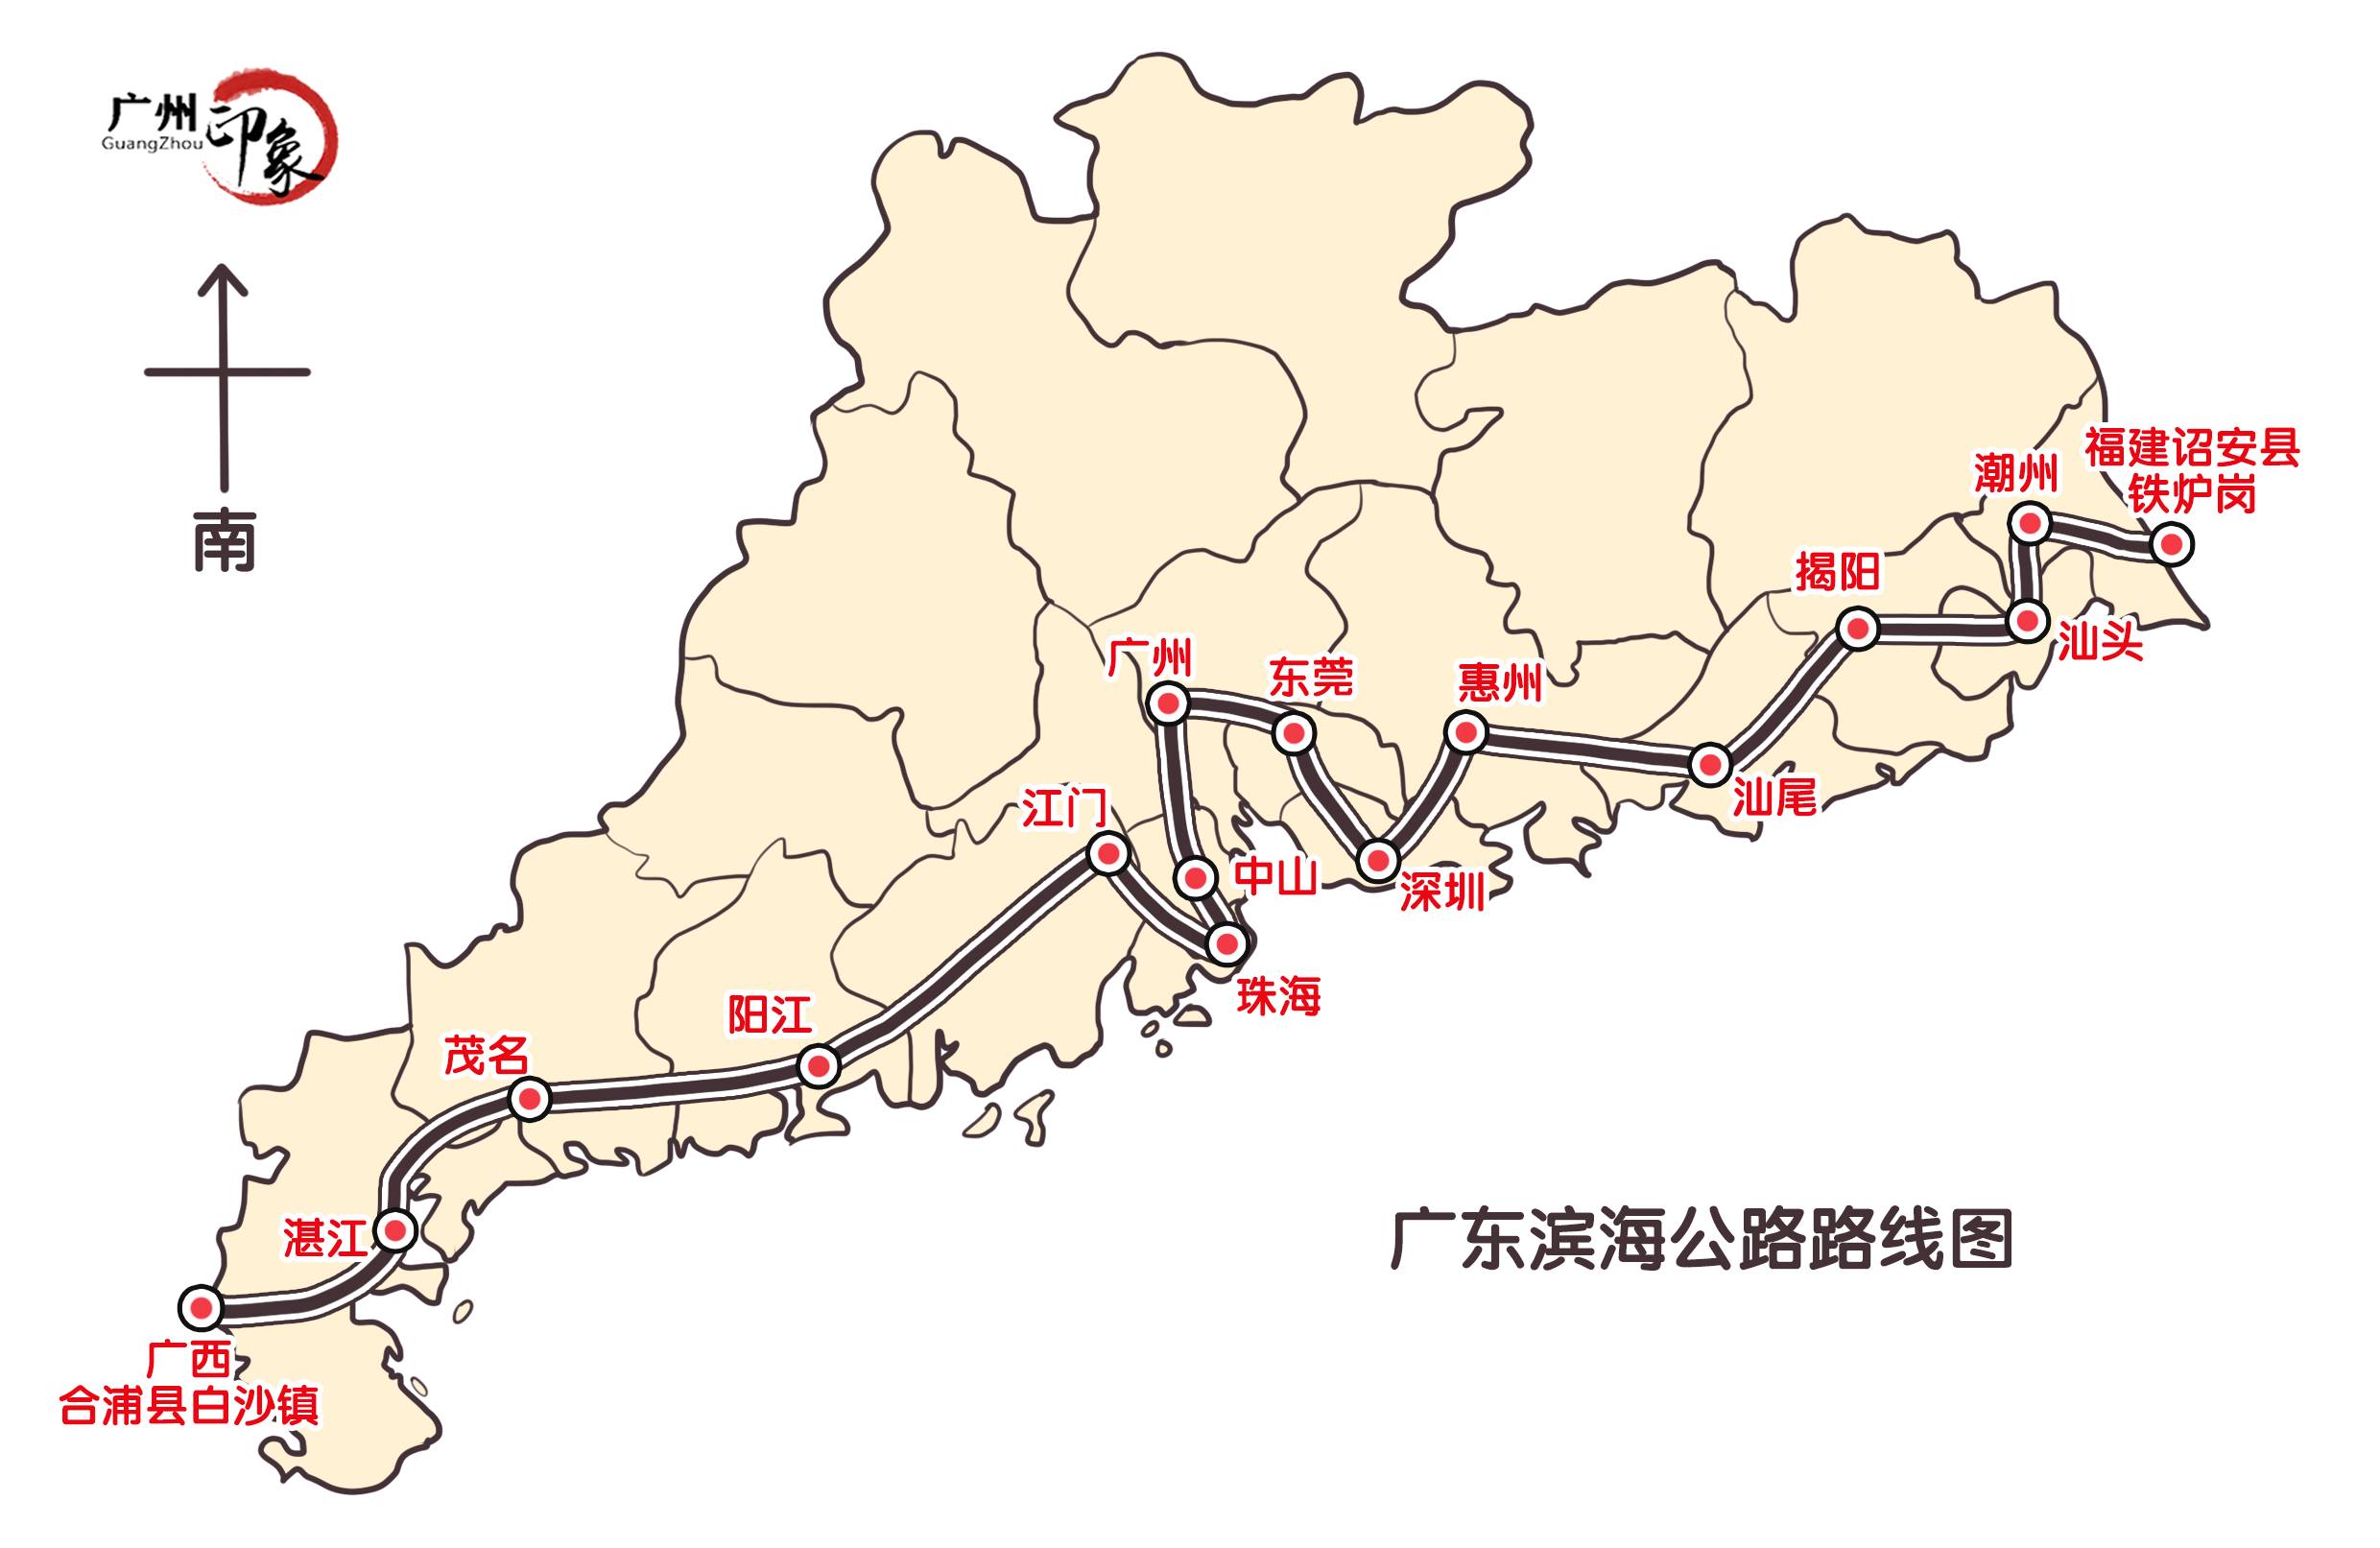 今年4月,经省交通运输厅会同编制单位调研,将广东滨海公路湛江段具体